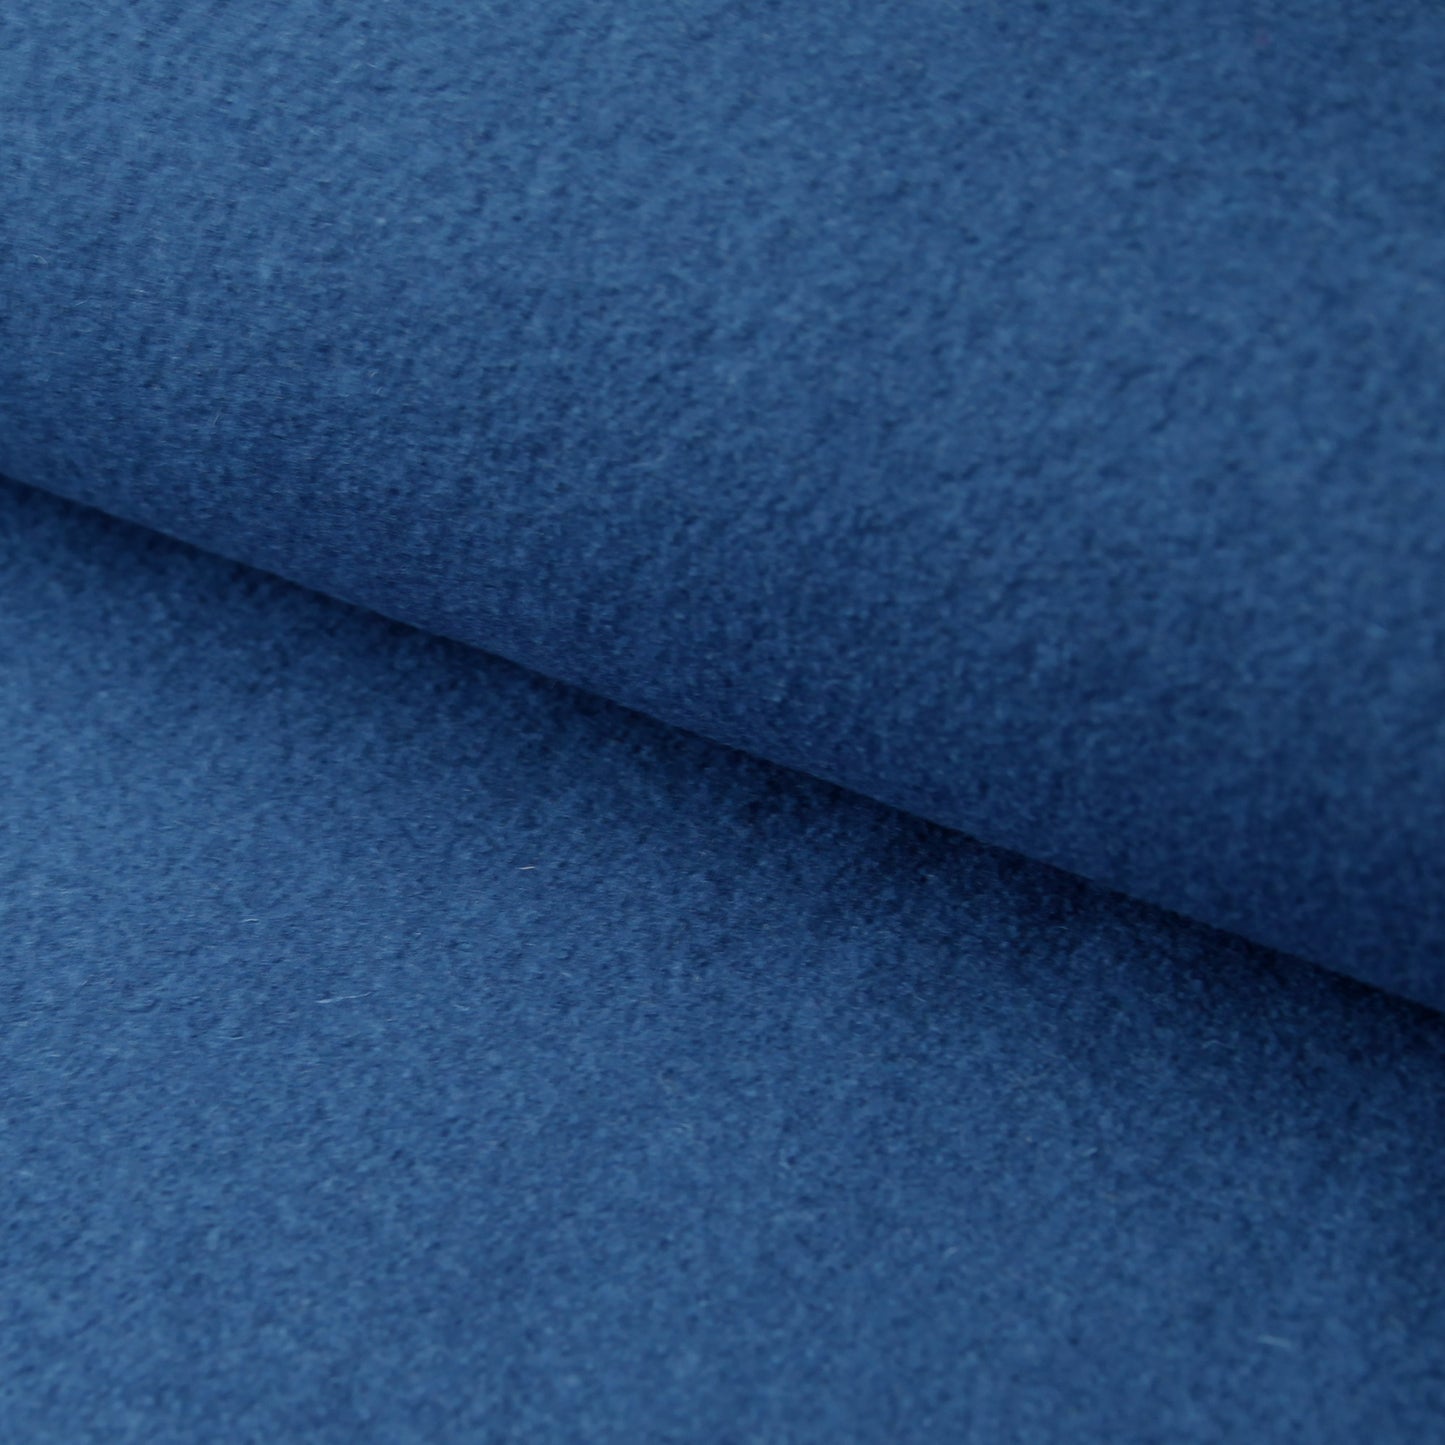 Kochwolle - Walkloden - Wolle - Trachten in der Farbe Marineblau / JeaWollstoffeStoffe Kudellino